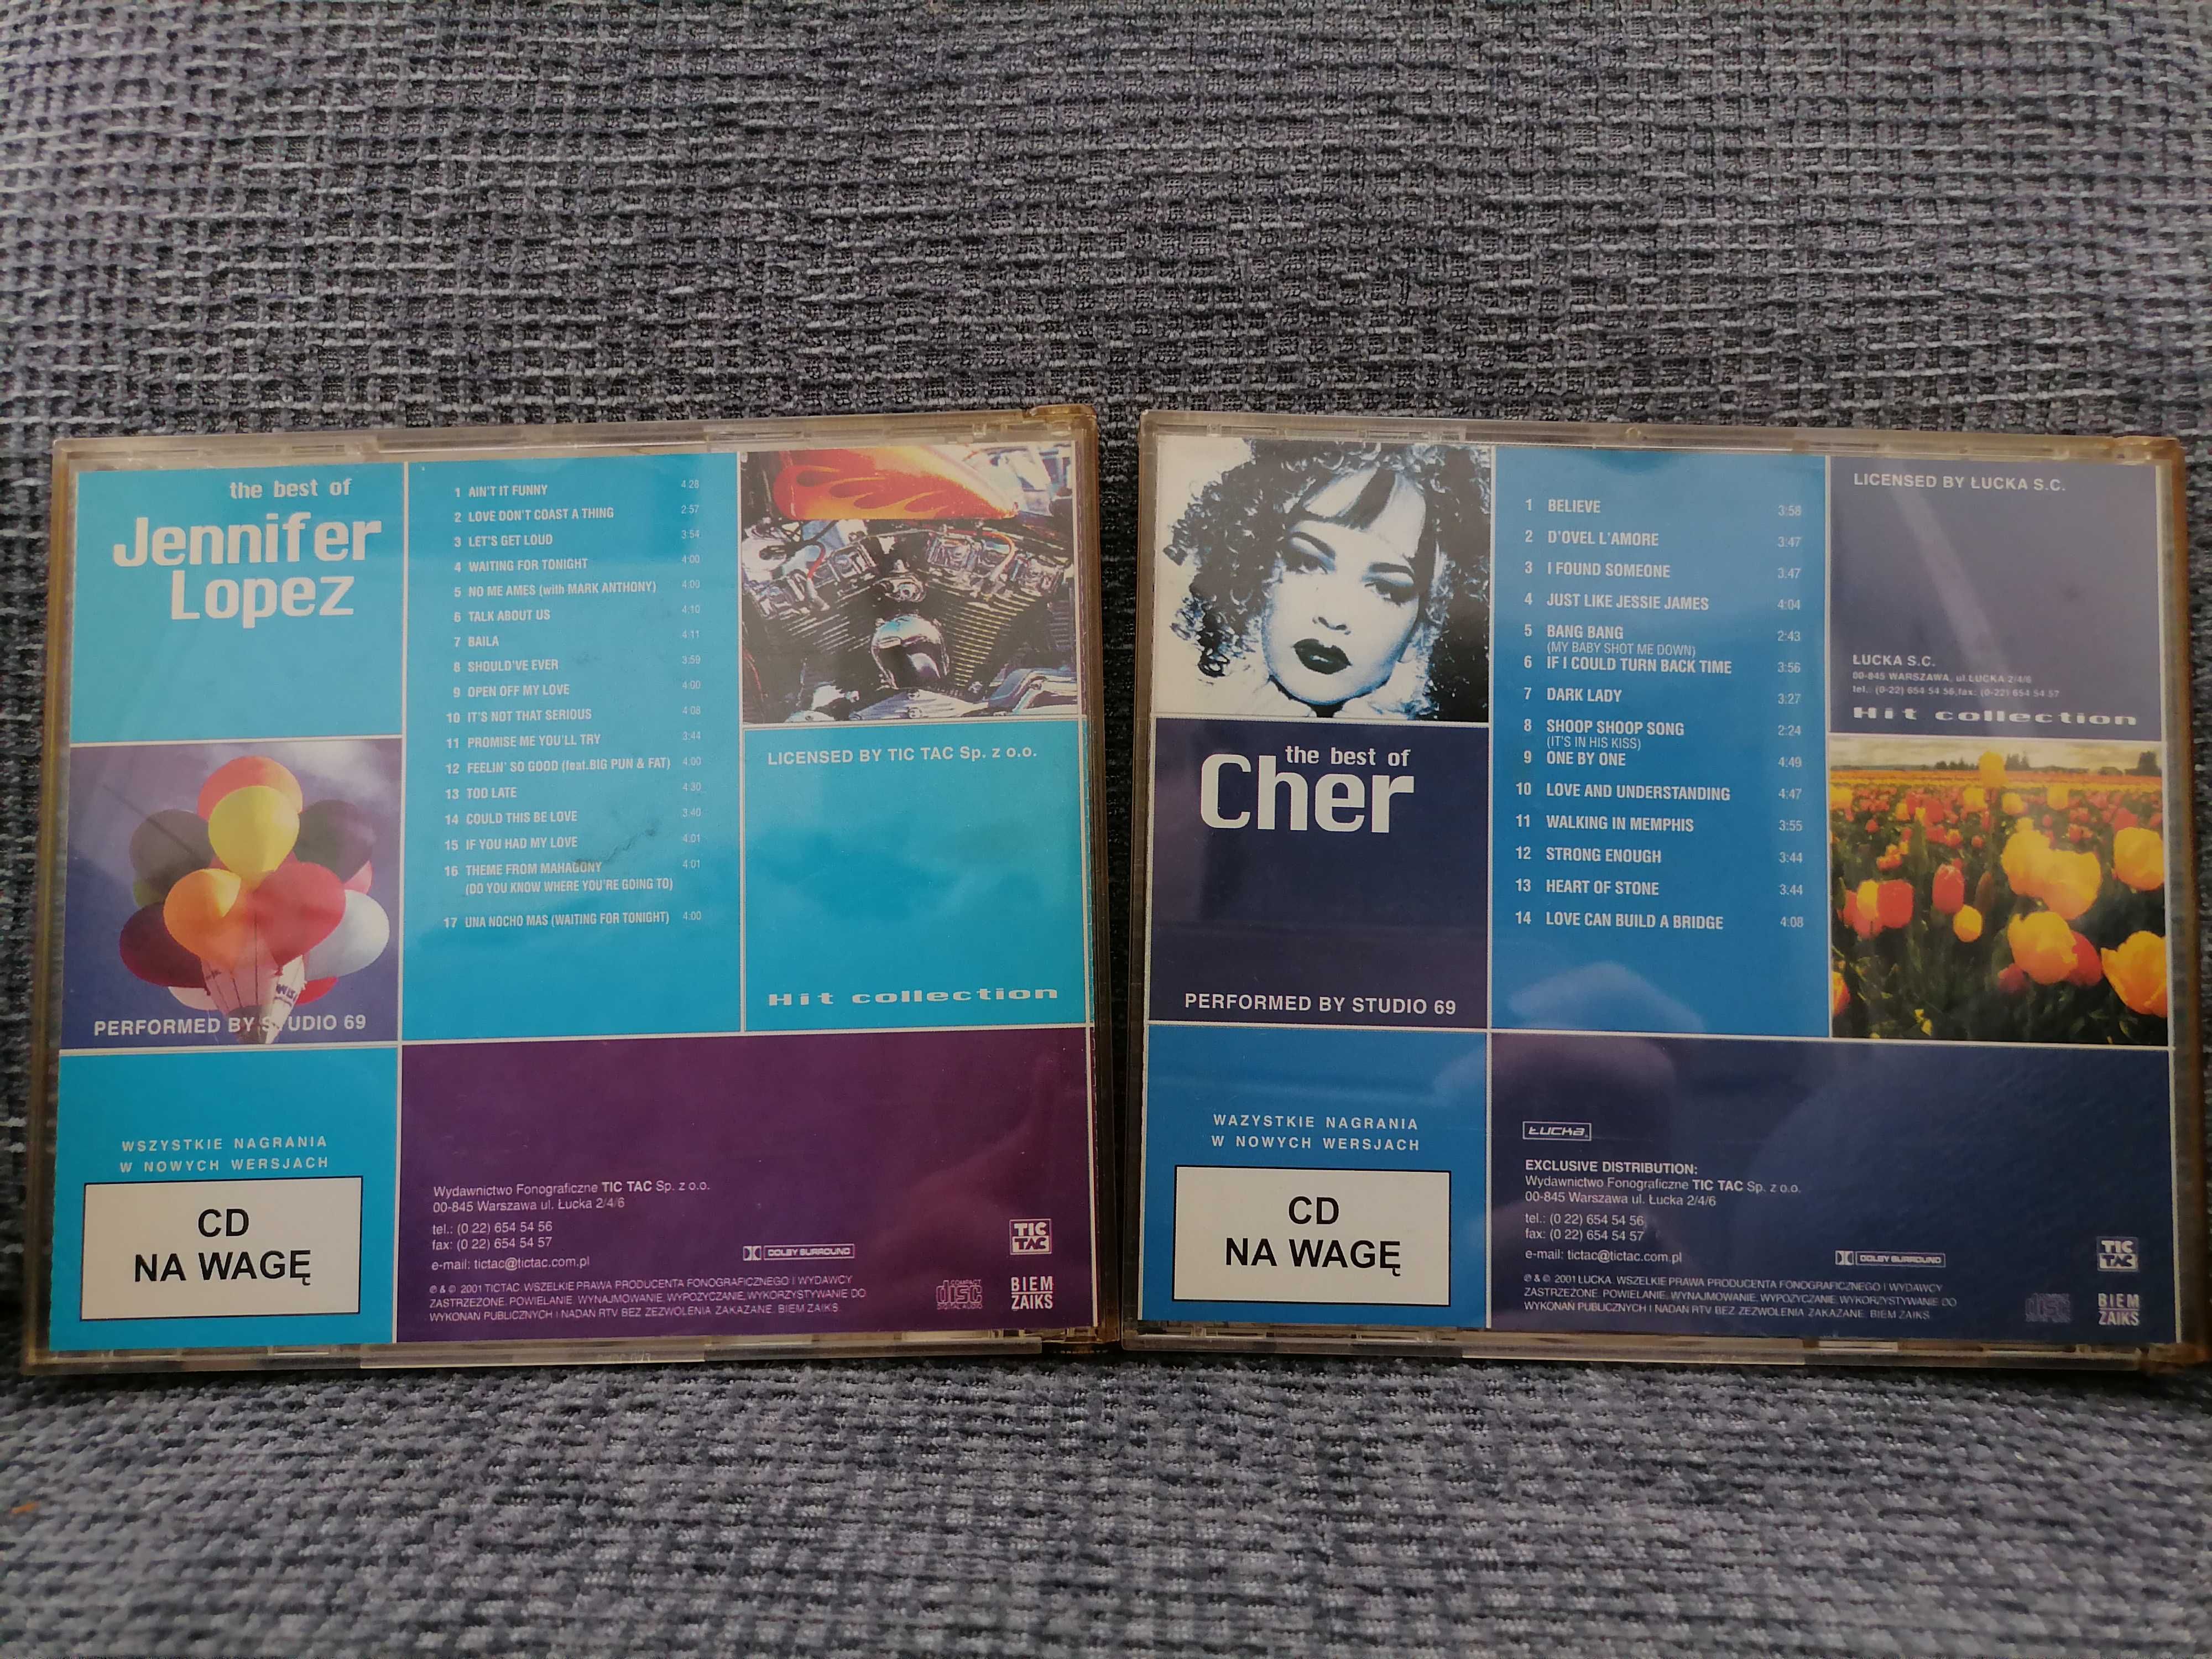 Płyty CD the Best of Jennifer Lopez i Cher